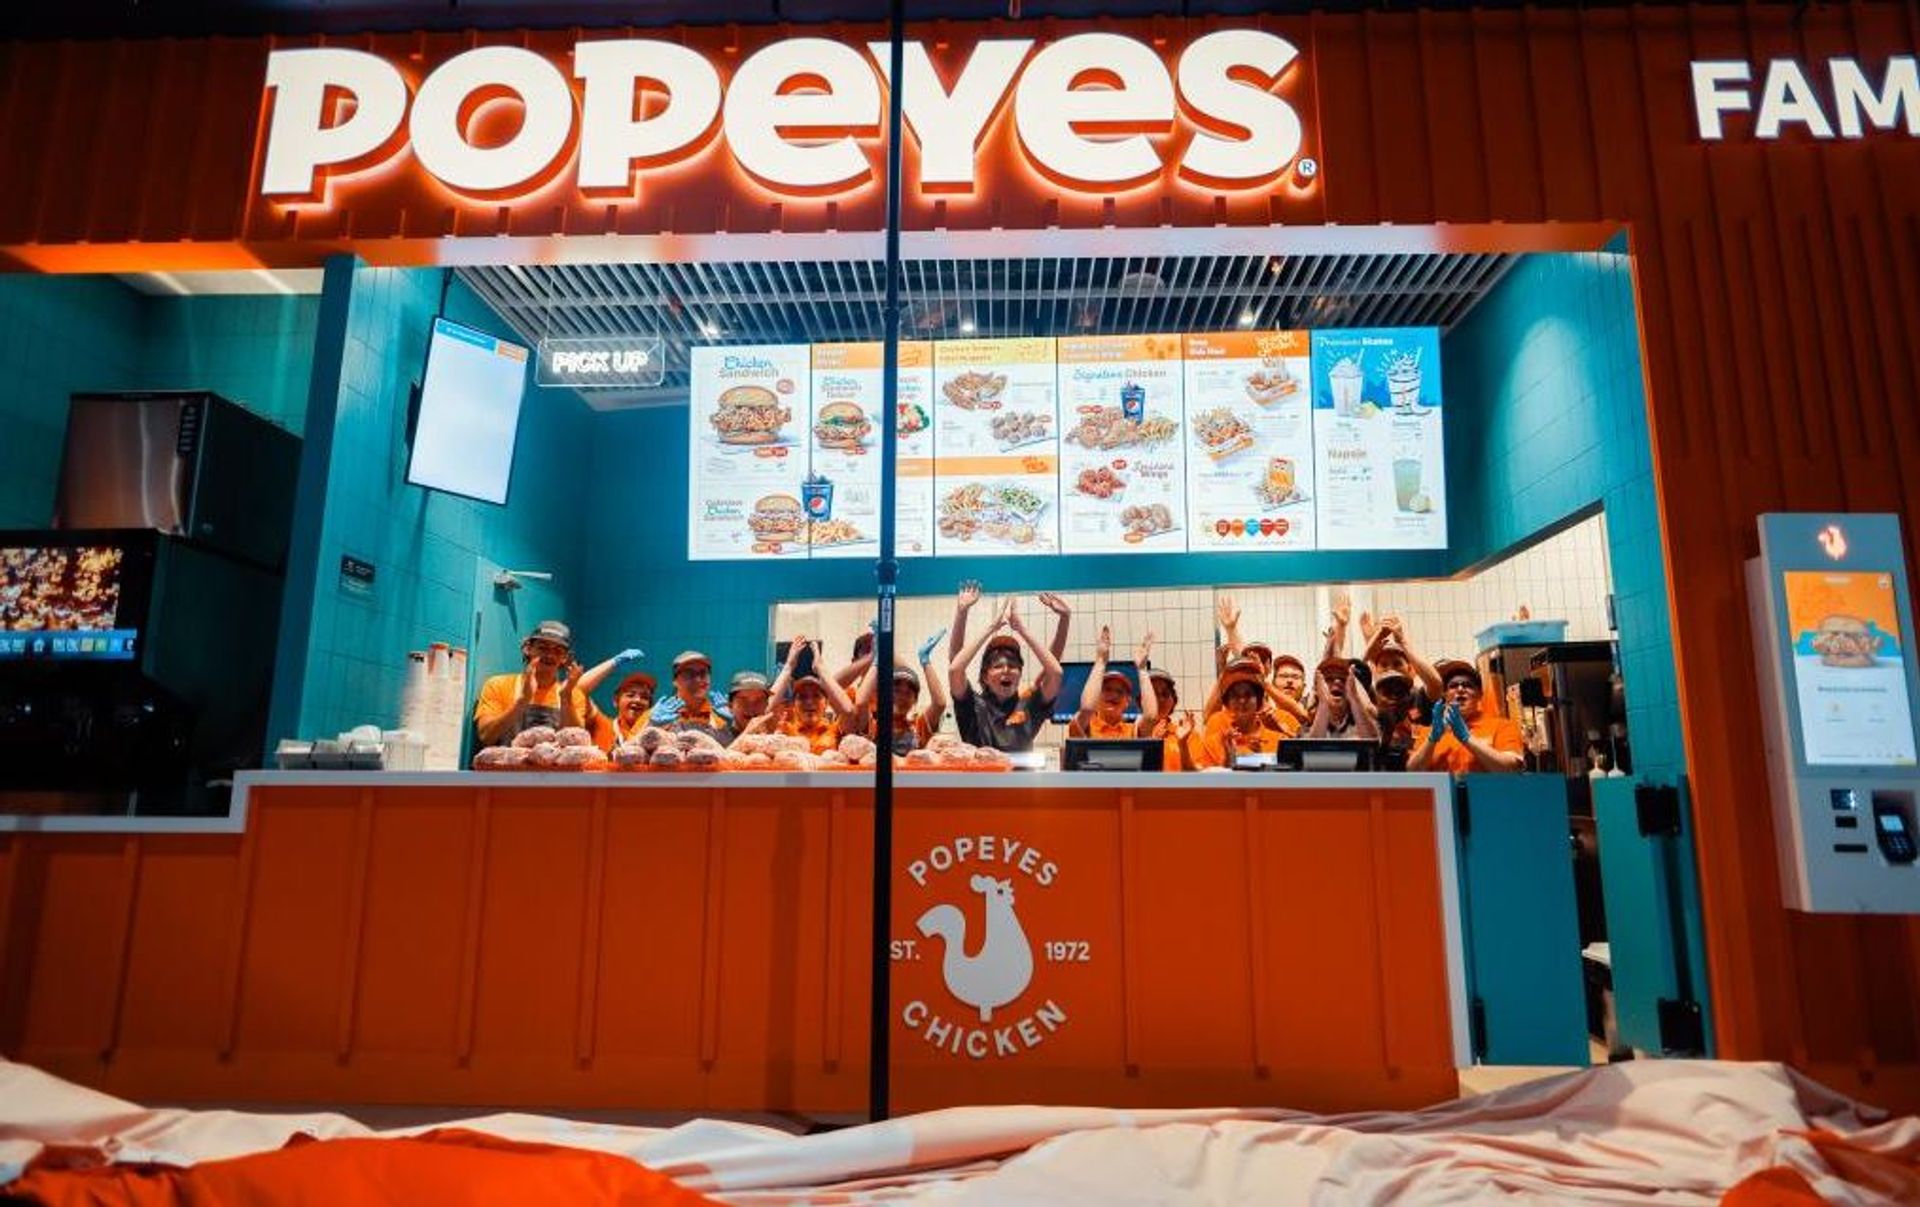 Popeyes otwiera 5. restaurację w Polsce